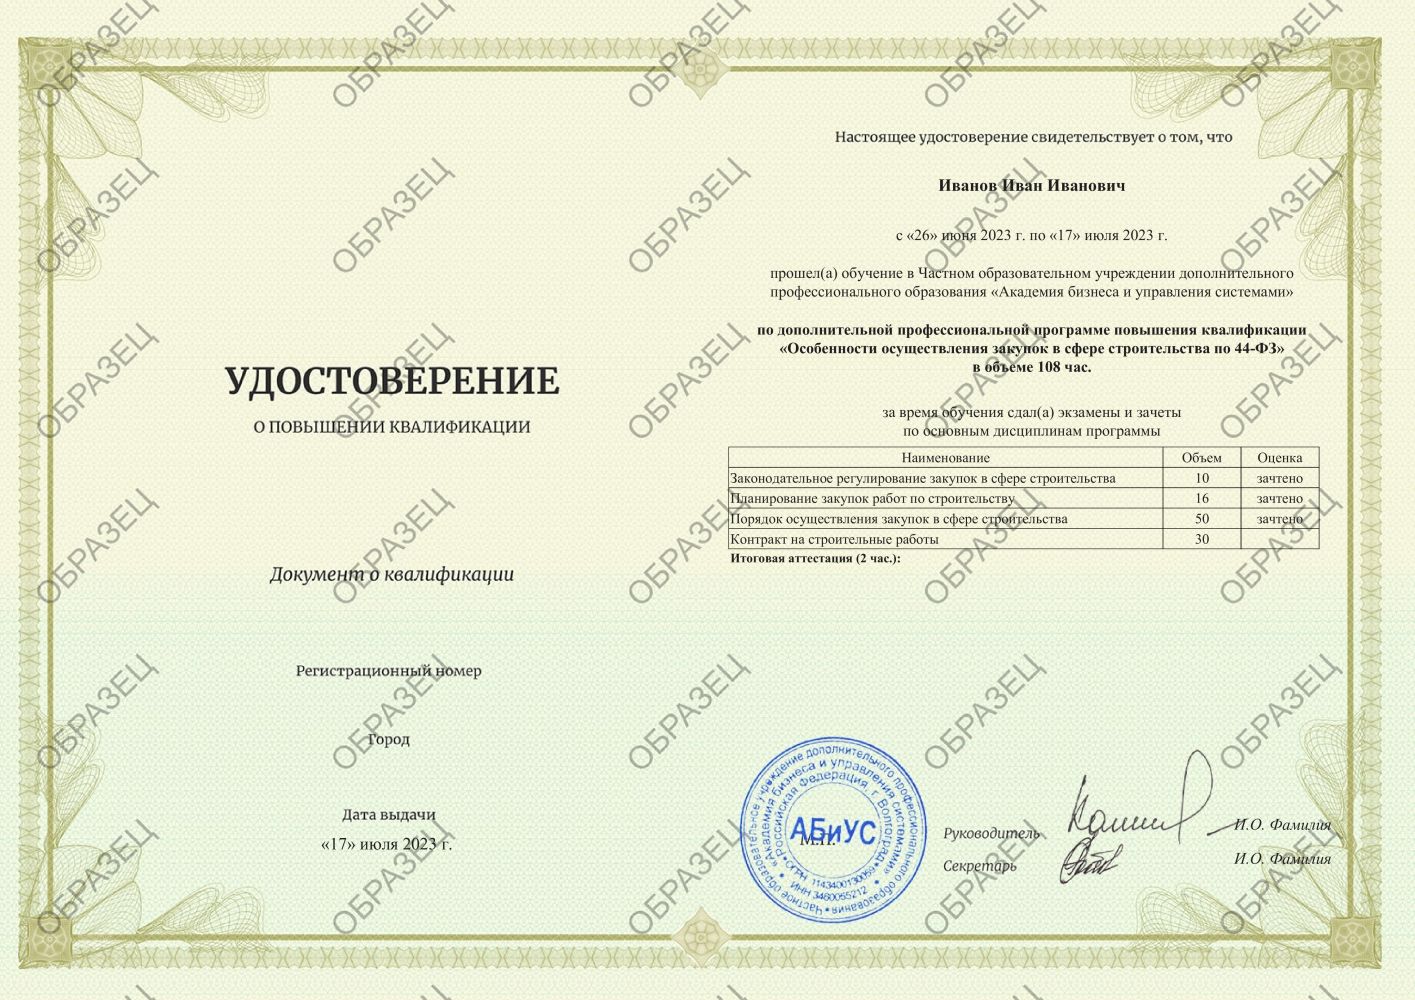 Удостоверение Особенности осуществления закупок в сфере строительства по 44-ФЗ 108 часов 6563 руб.